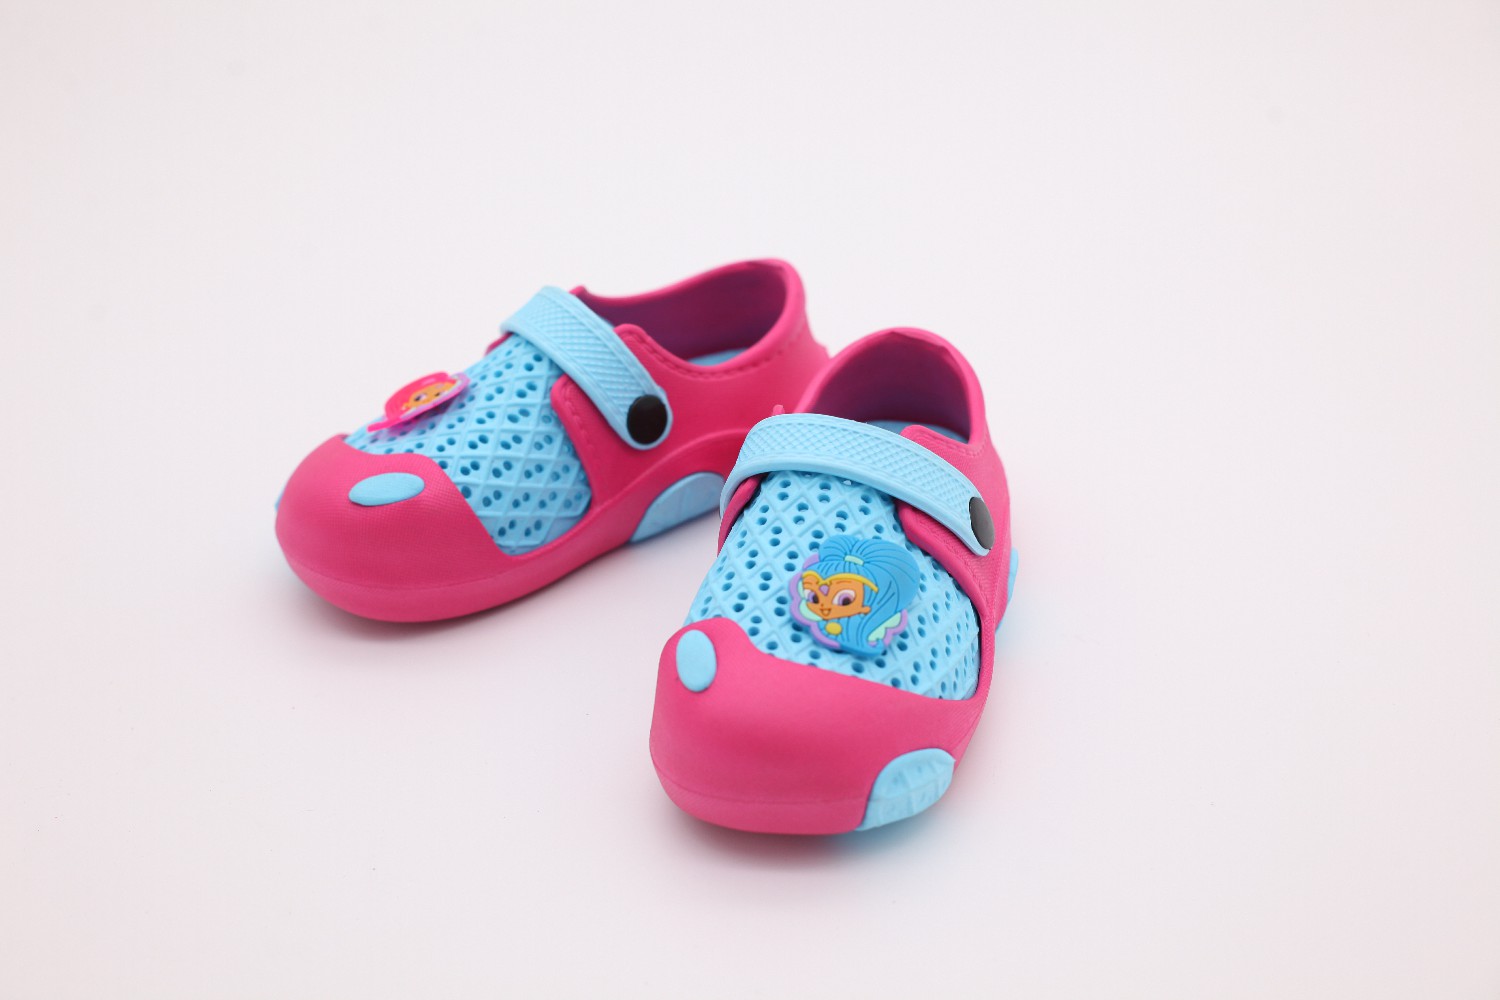 Sandalias de zuecos fucsia y turquesa con dibujos animados de EVA para niños pequeños